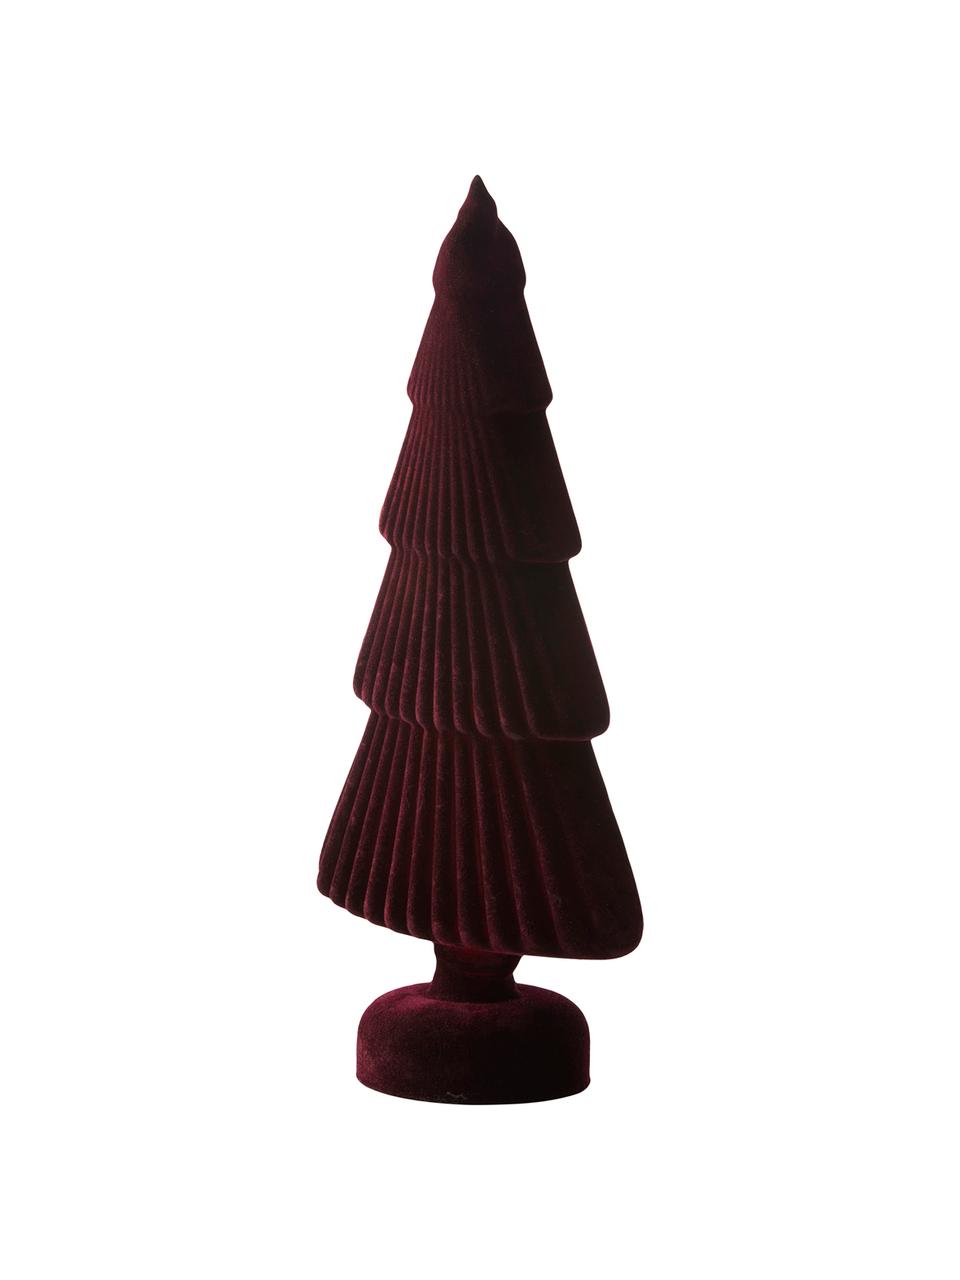 Dekorácia Velvie Christmas Tree, Tmavočervená